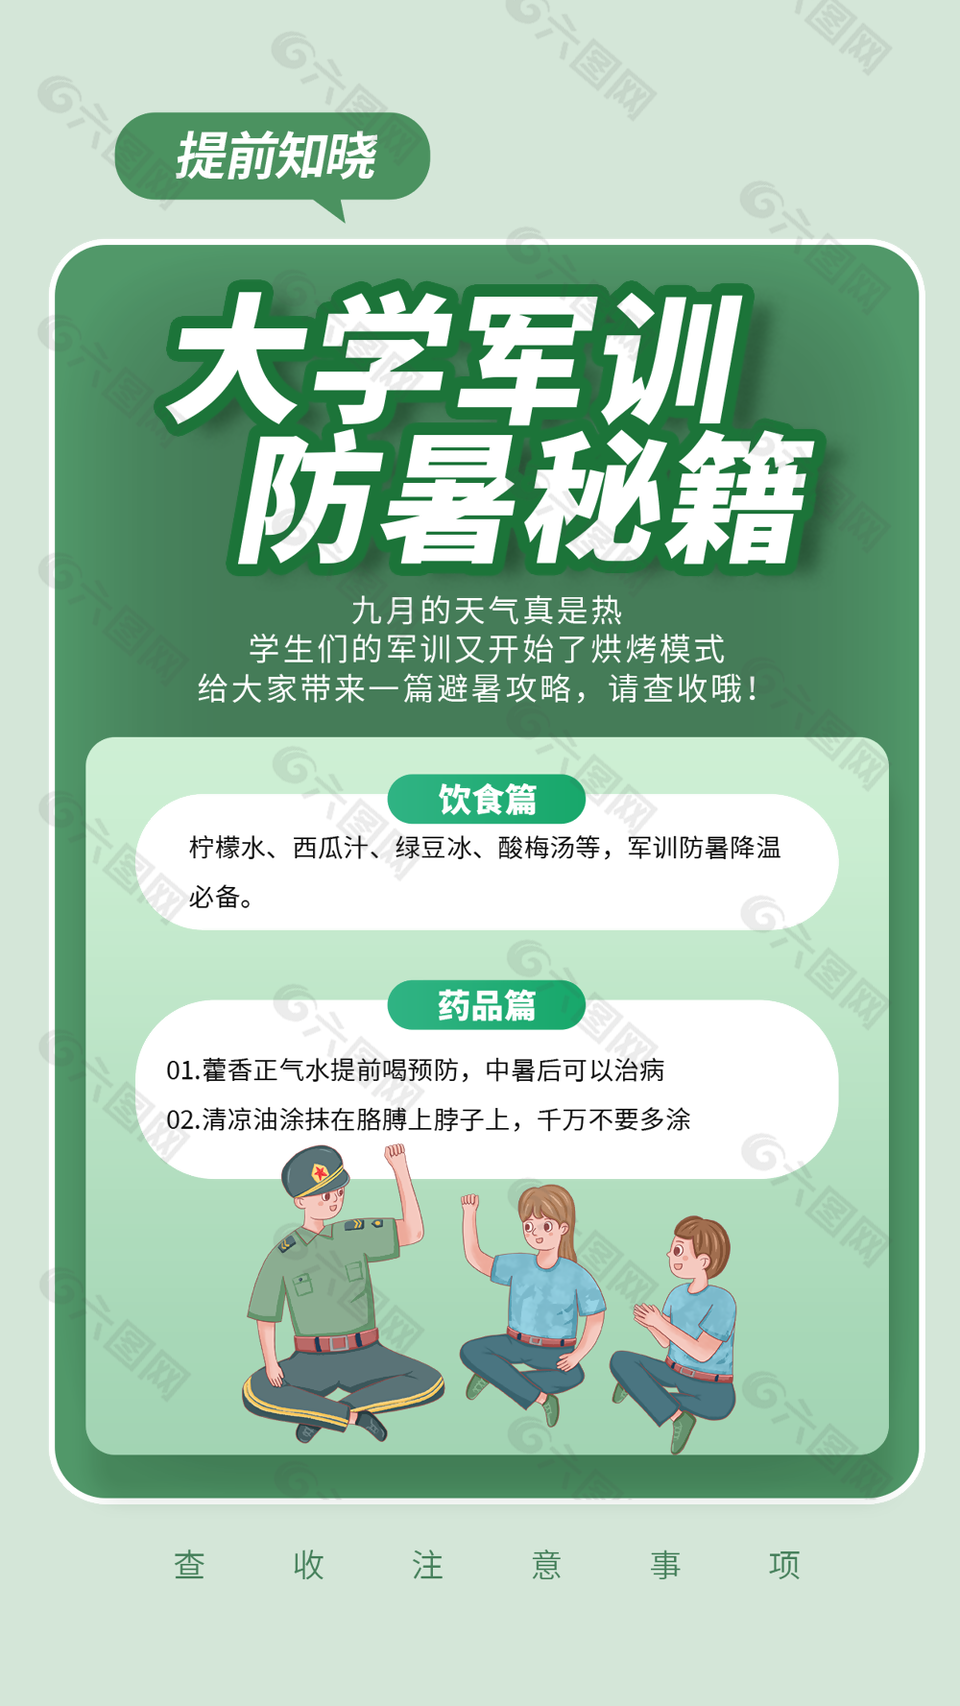 清新卡通大学军训防暑秘籍插画海报设计